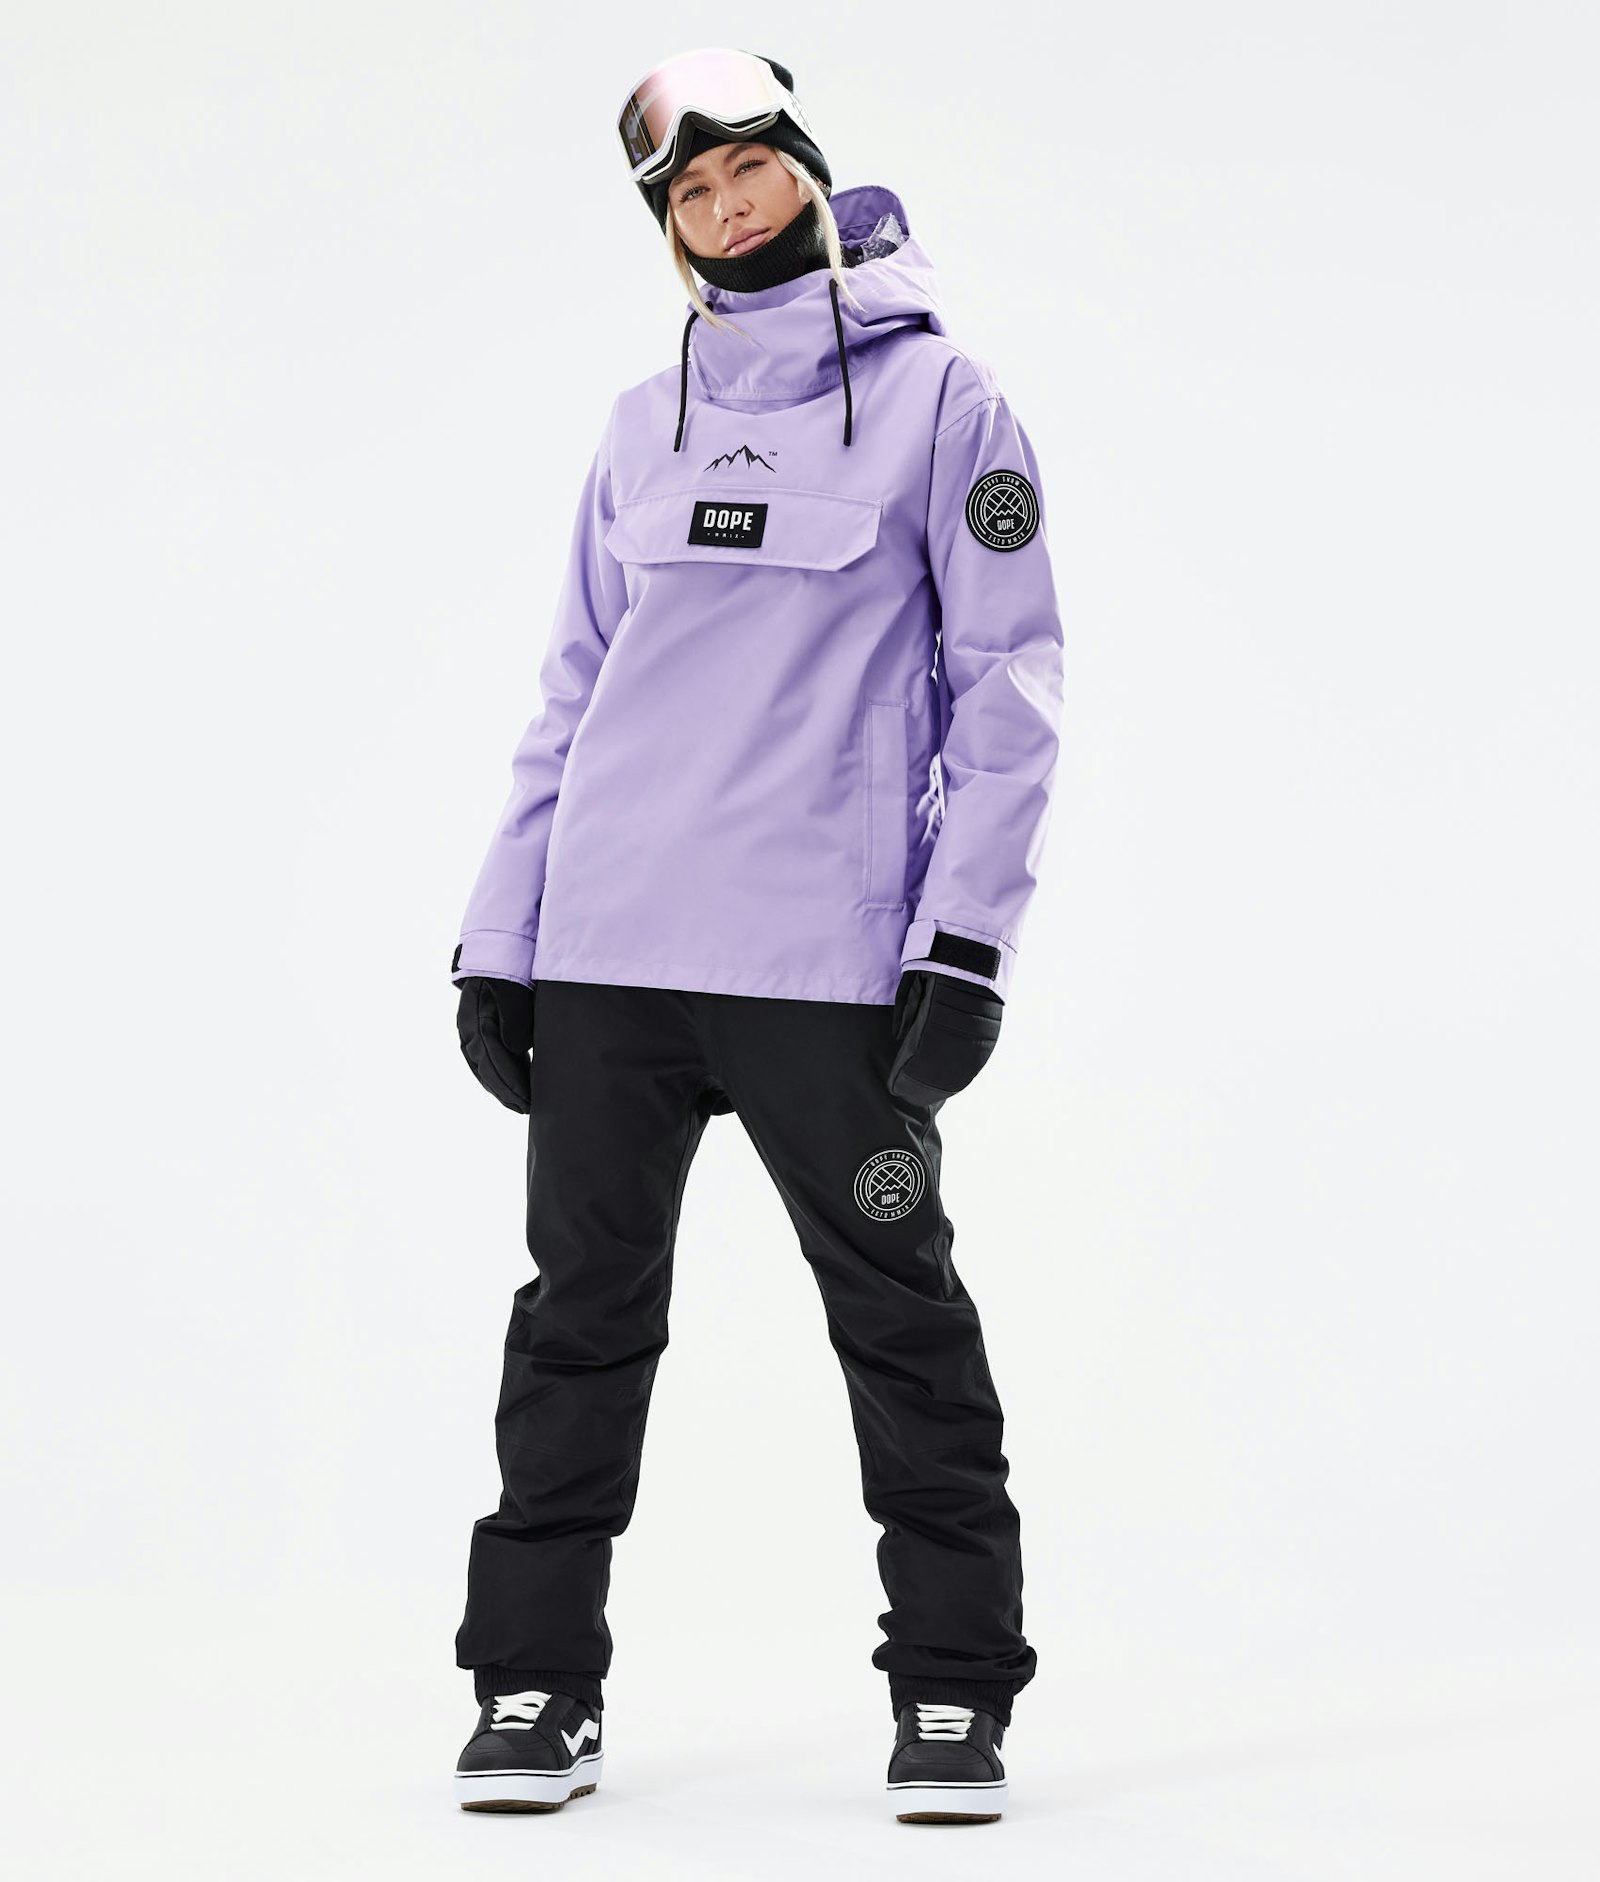 Dope Blizzard W 2021 Snowboard Jacket Women Faded Violet